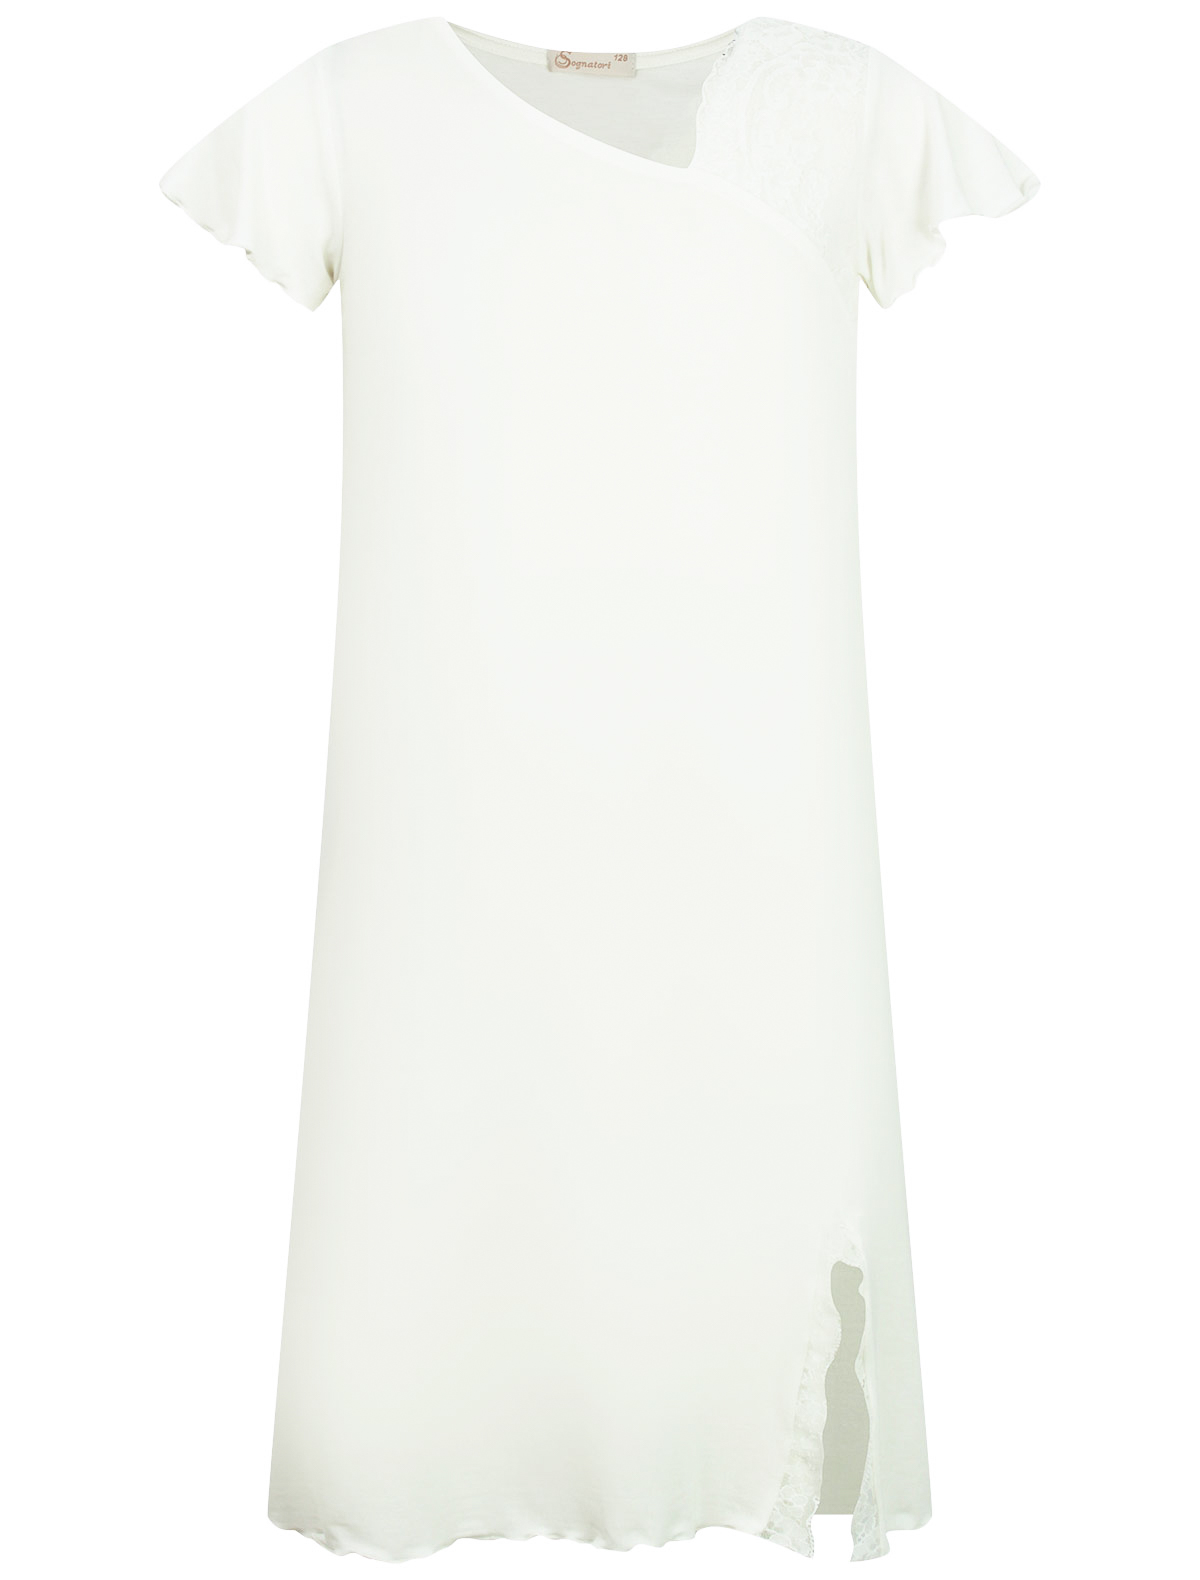 Ночная рубашка Sognatori 2300094, цвет разноцветный, размер 7